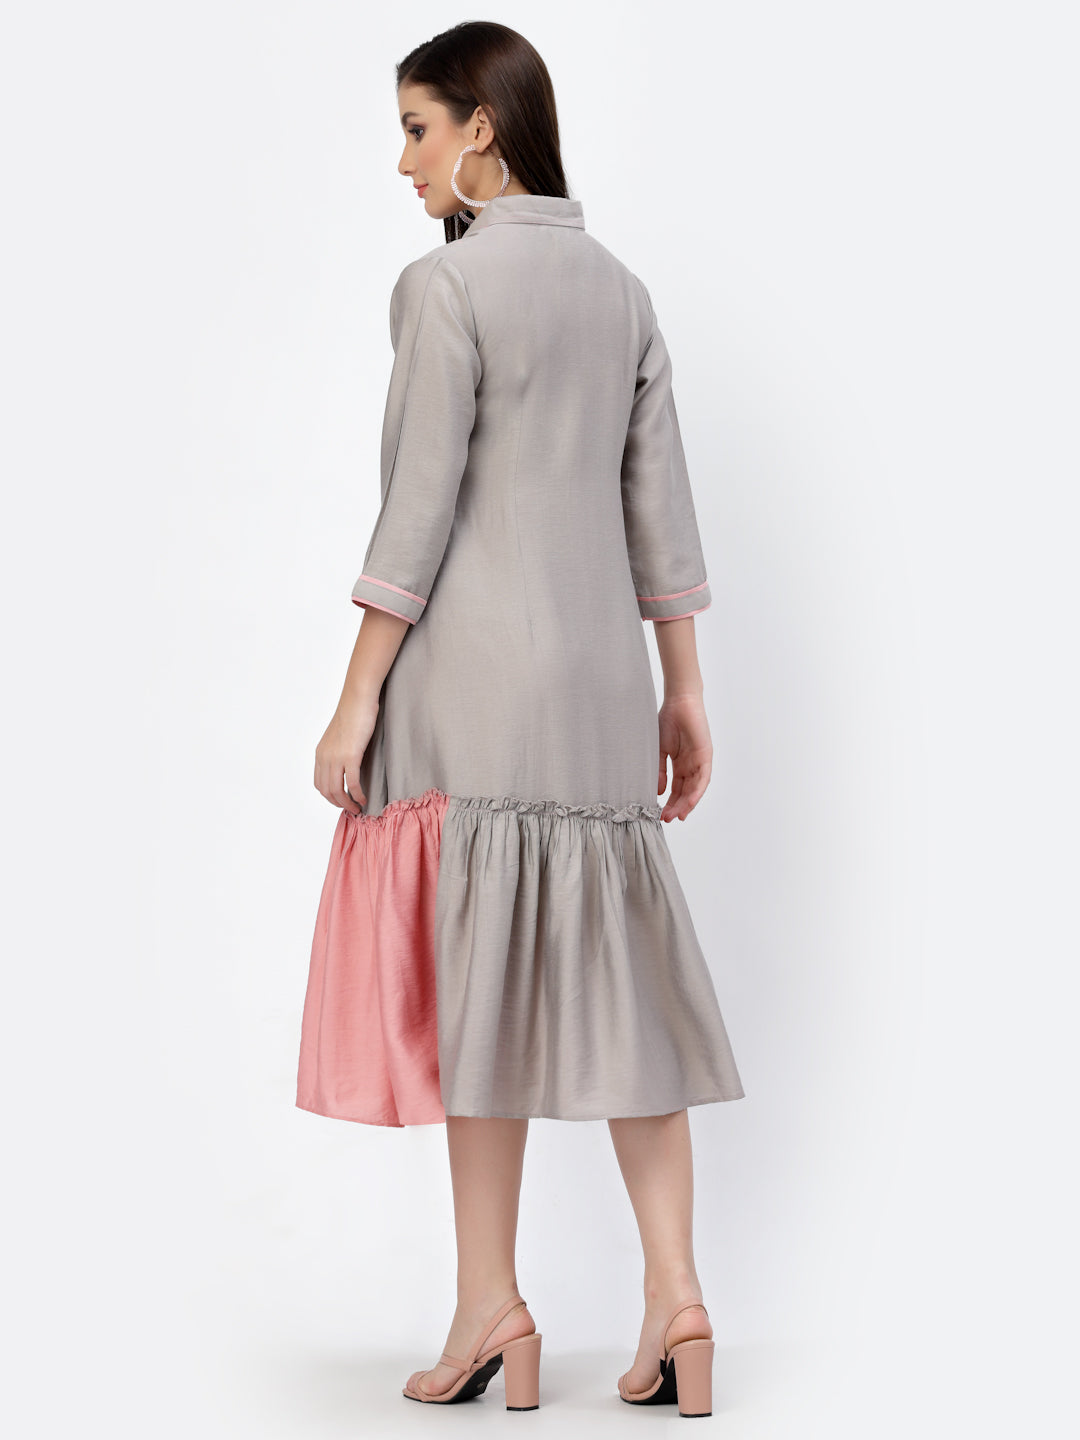 Grey Pink Colourblock Flared Ruffled Shirt Dress - ARH1036